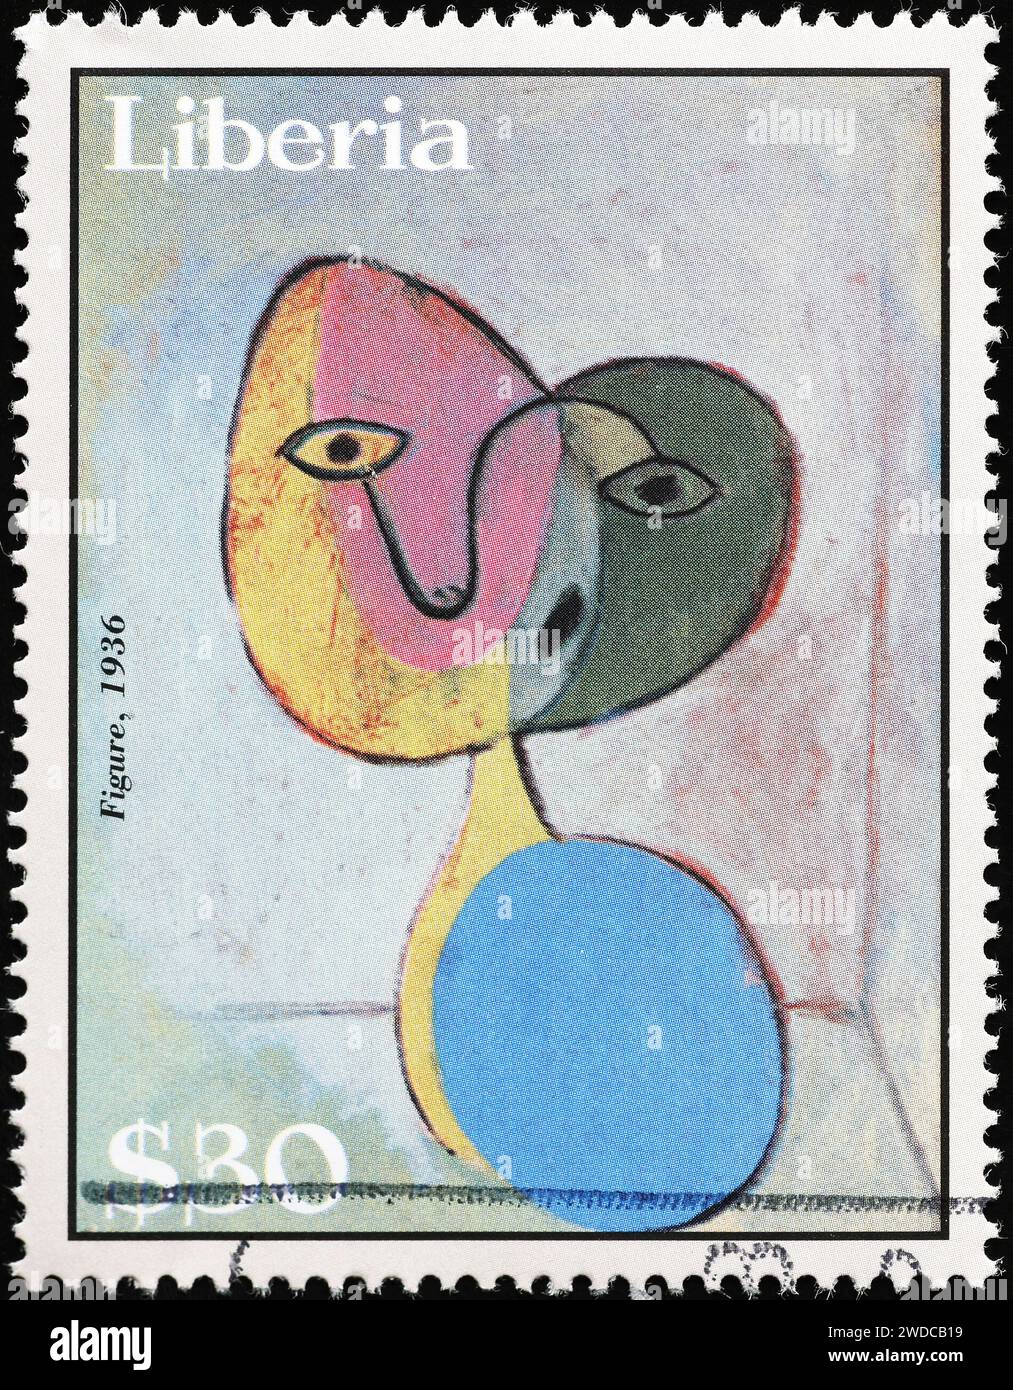 'Figurine' de Pablo Picasso sur timbre potage Banque D'Images